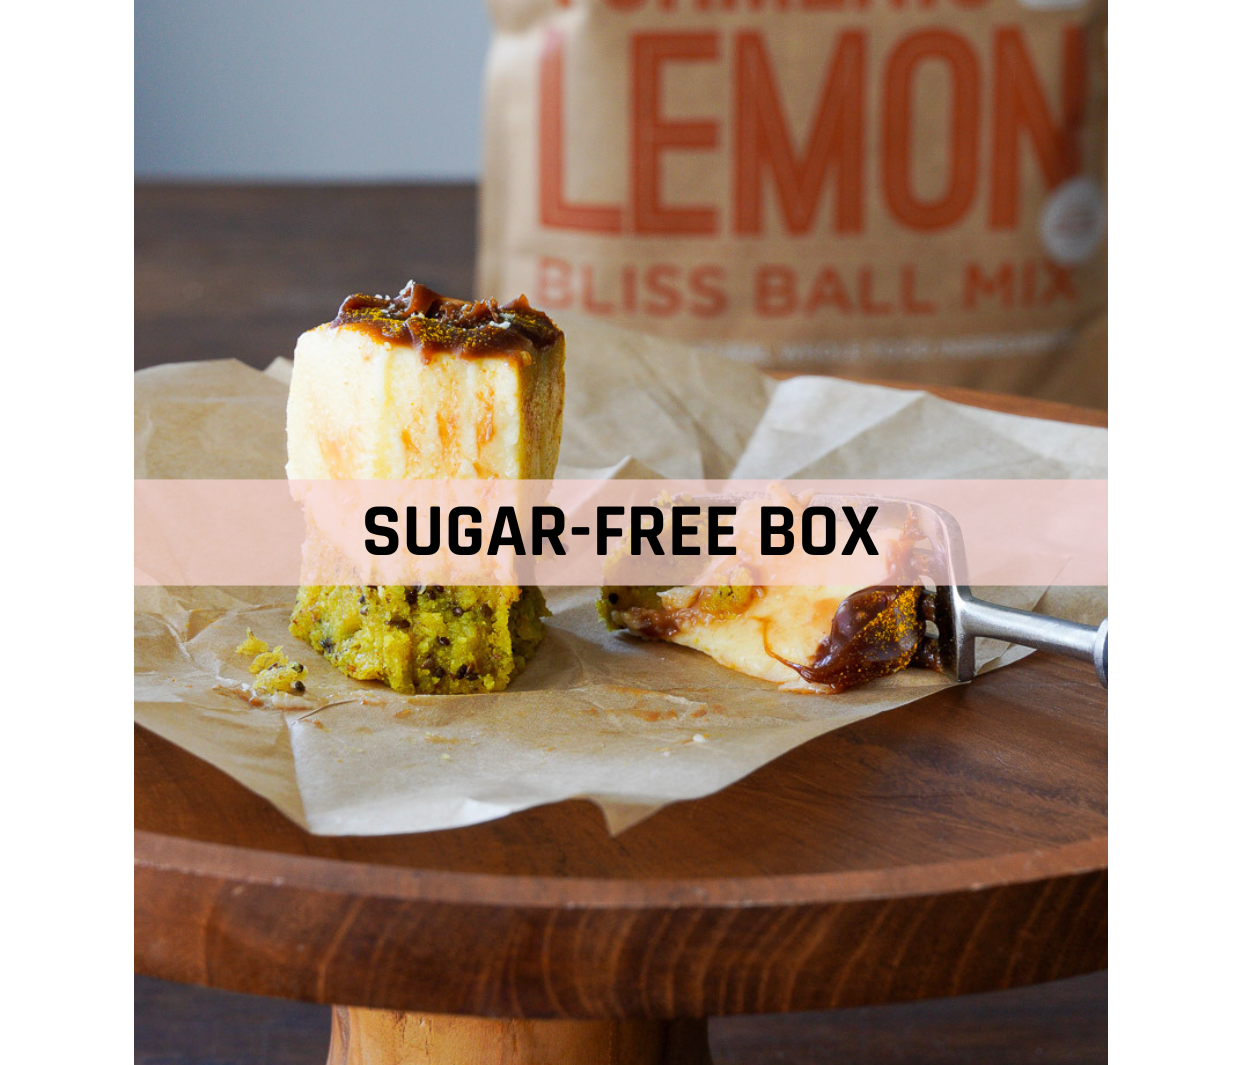 The Sugarfree Box